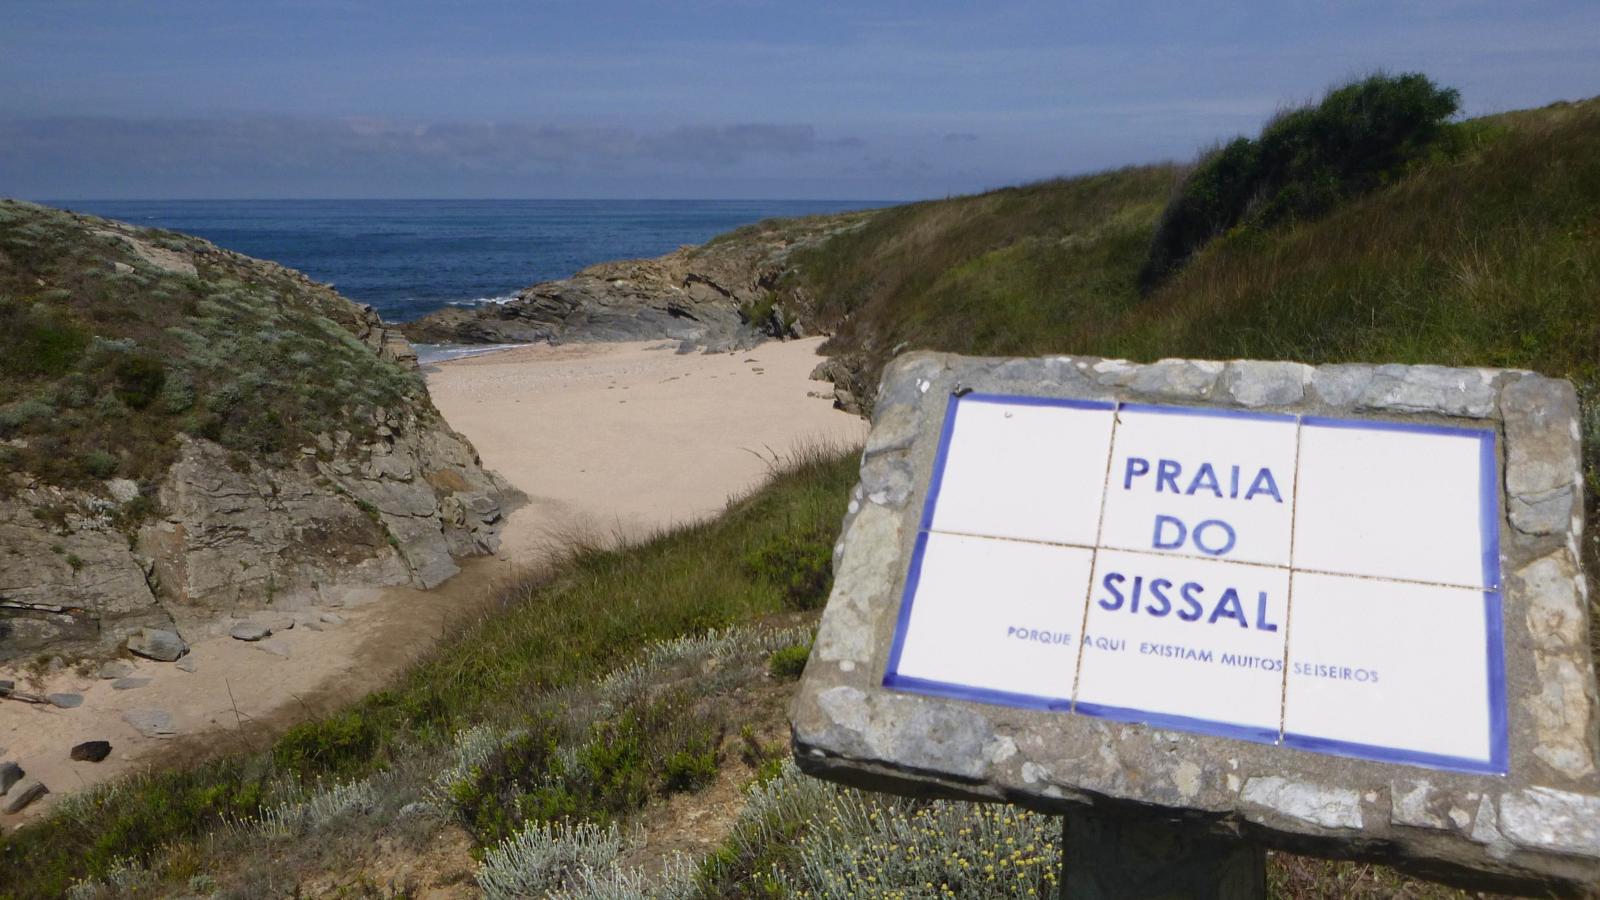 Praia do Sissal is een tussen de rotsen verstopt pareltje